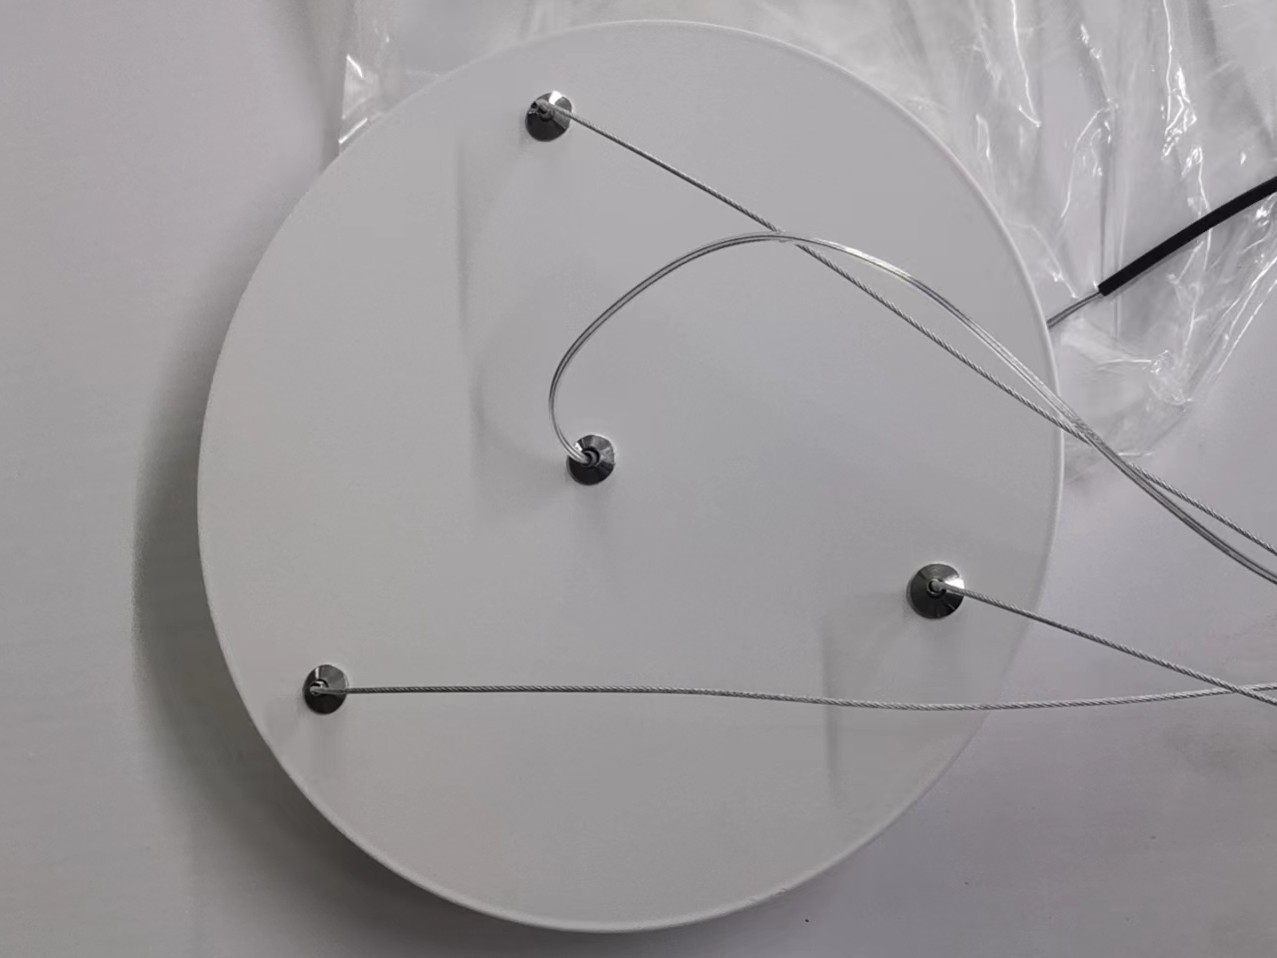 Simiplfied круглый белый алюминиевый металлический подвесной светильник для помещений в офисе (KIH-73P) 